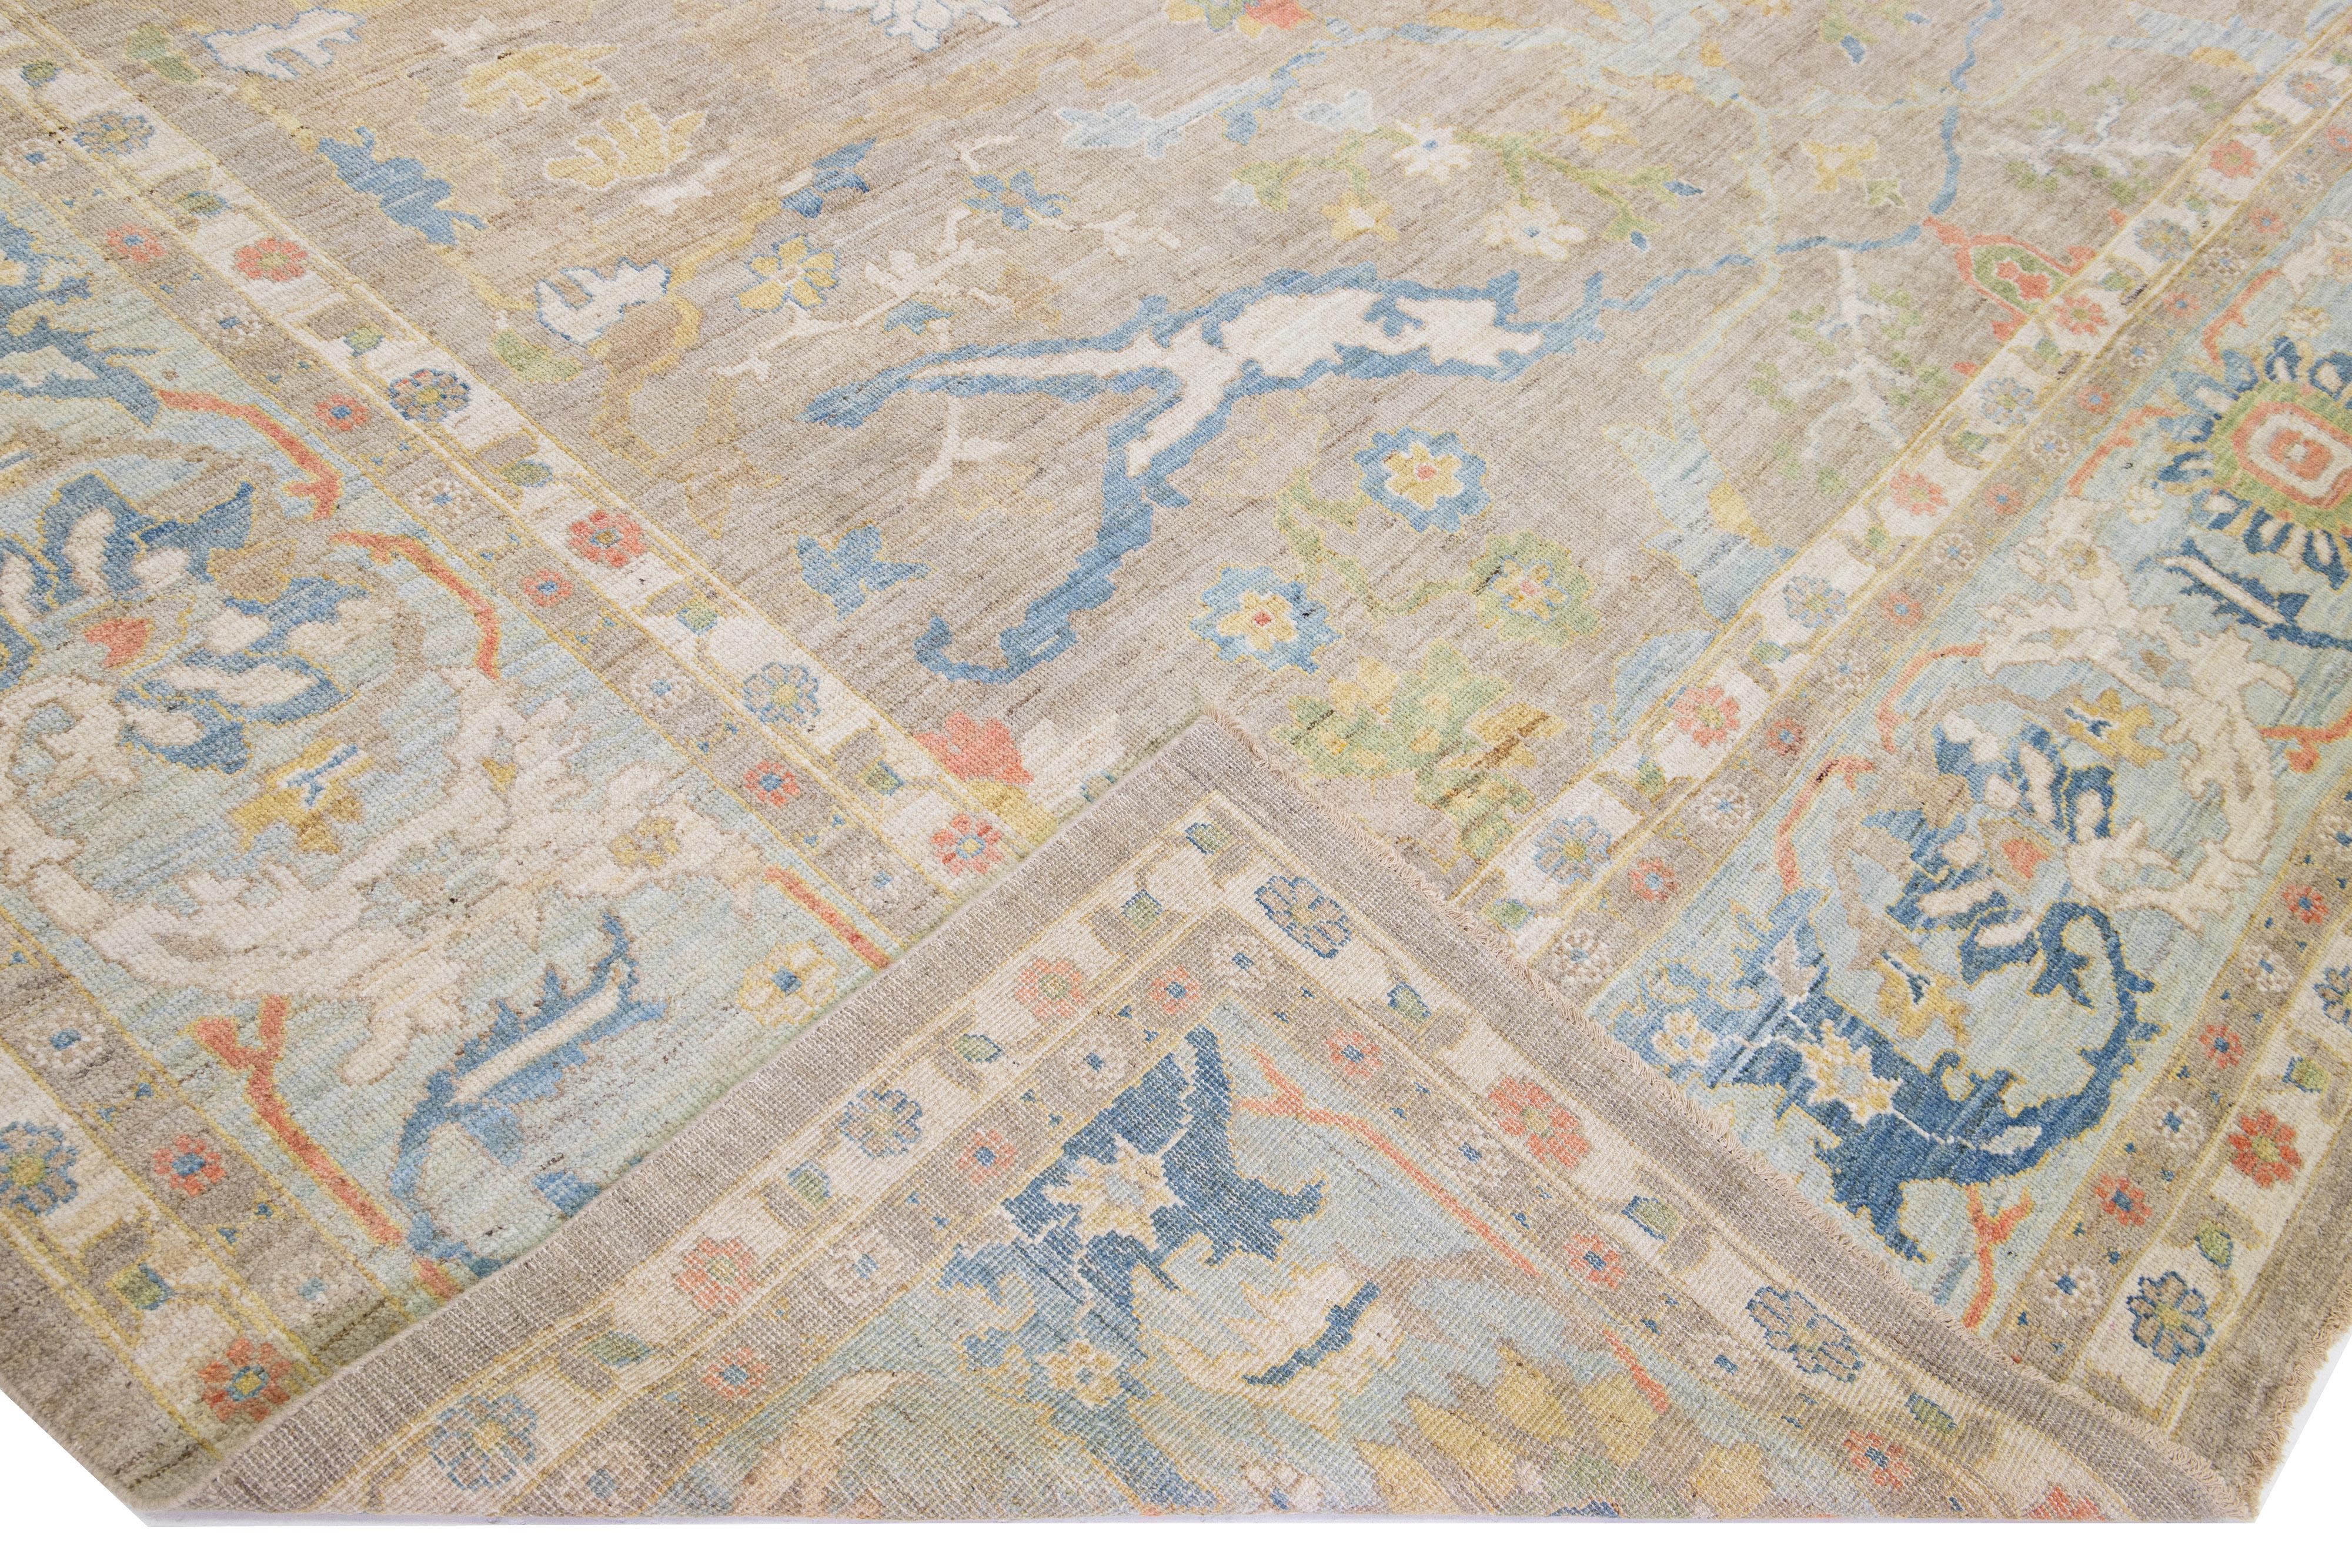 Magnifique tapis moderne Sultanabad en laine, noué à la main et de grande taille, avec un champ de couleur marron. Ce tapis a un cadre bleu avec des accents multicolores dans un magnifique motif floral.

Ce tapis mesure : 14'8